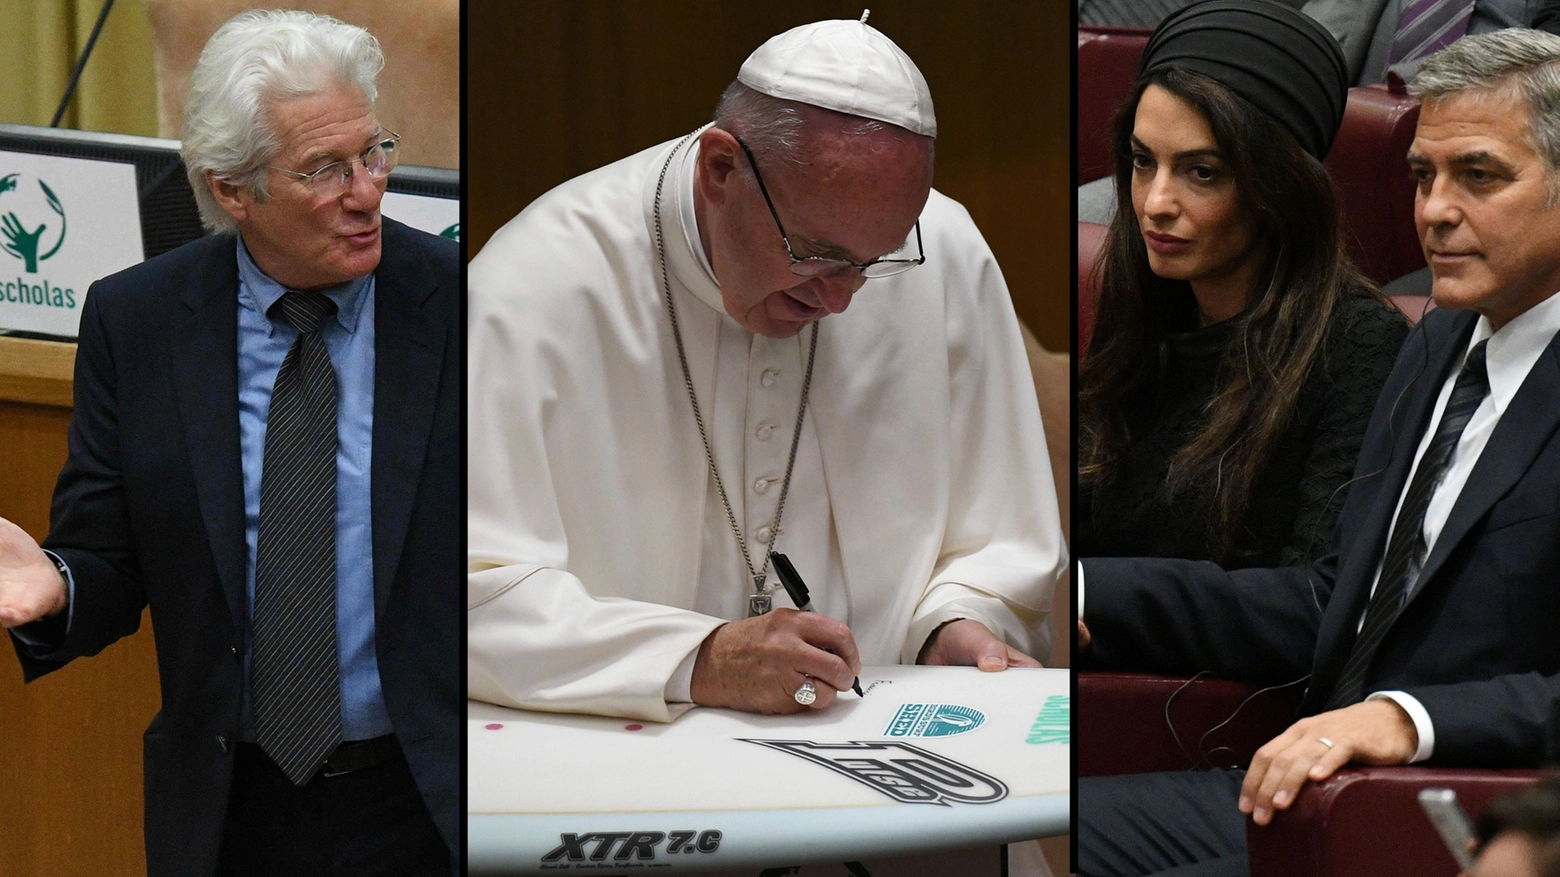 Vaticano, premiati Gere e Clooney. E Francesco firma la tavola da surf